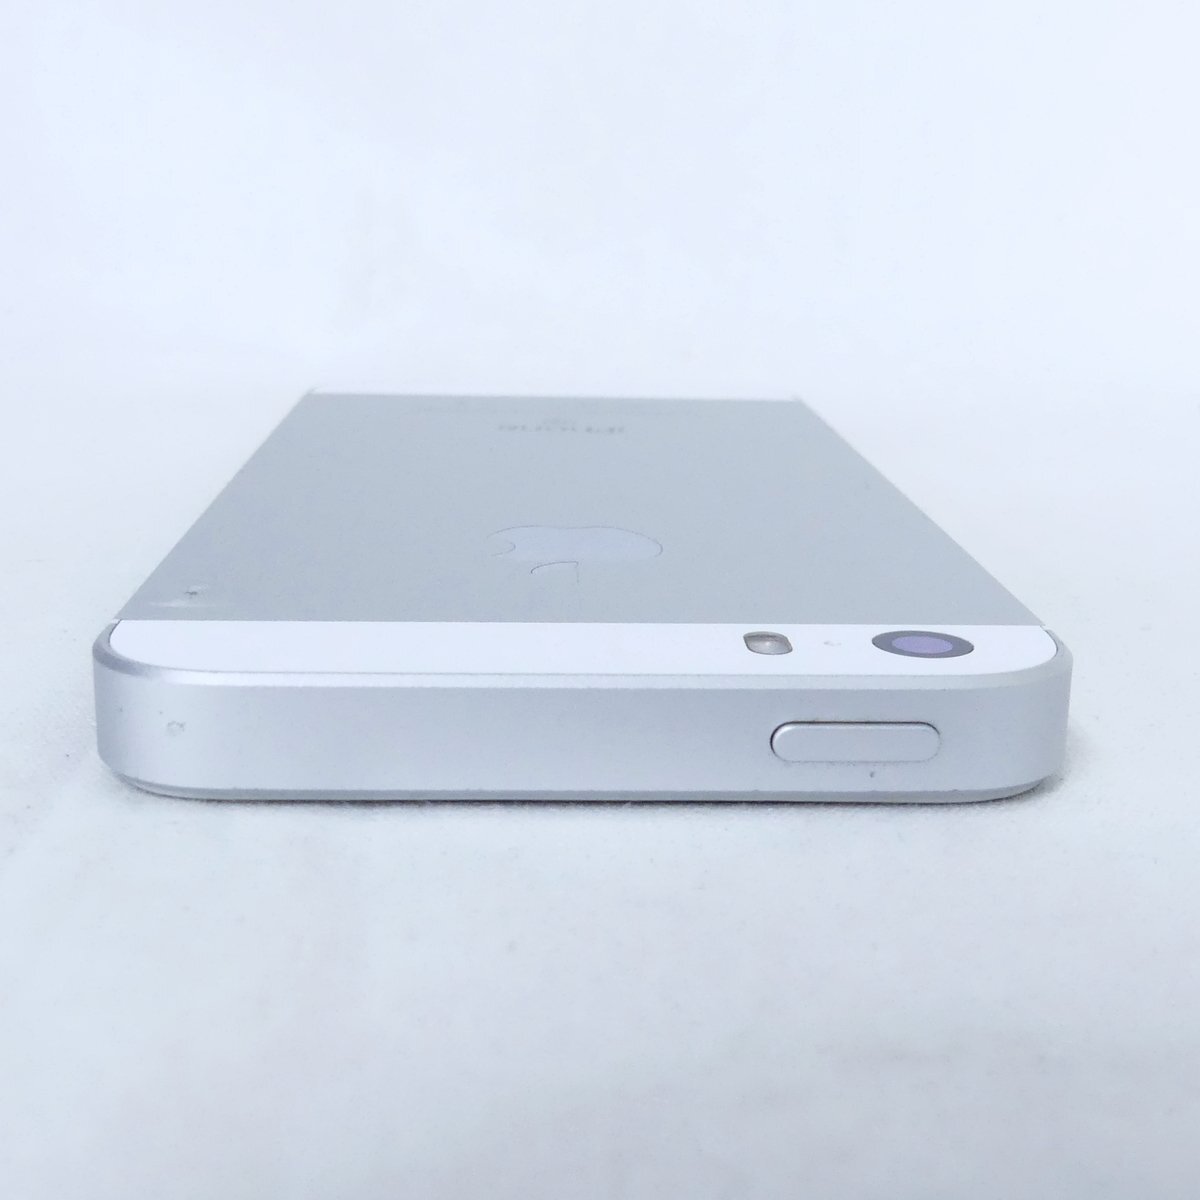 iPhoneSE 第1世代 シルバー 64GB TouchID反応OK バッテリー最大容量82% ドコモ SIMロックなし 判定○ USED /2404Cの画像3